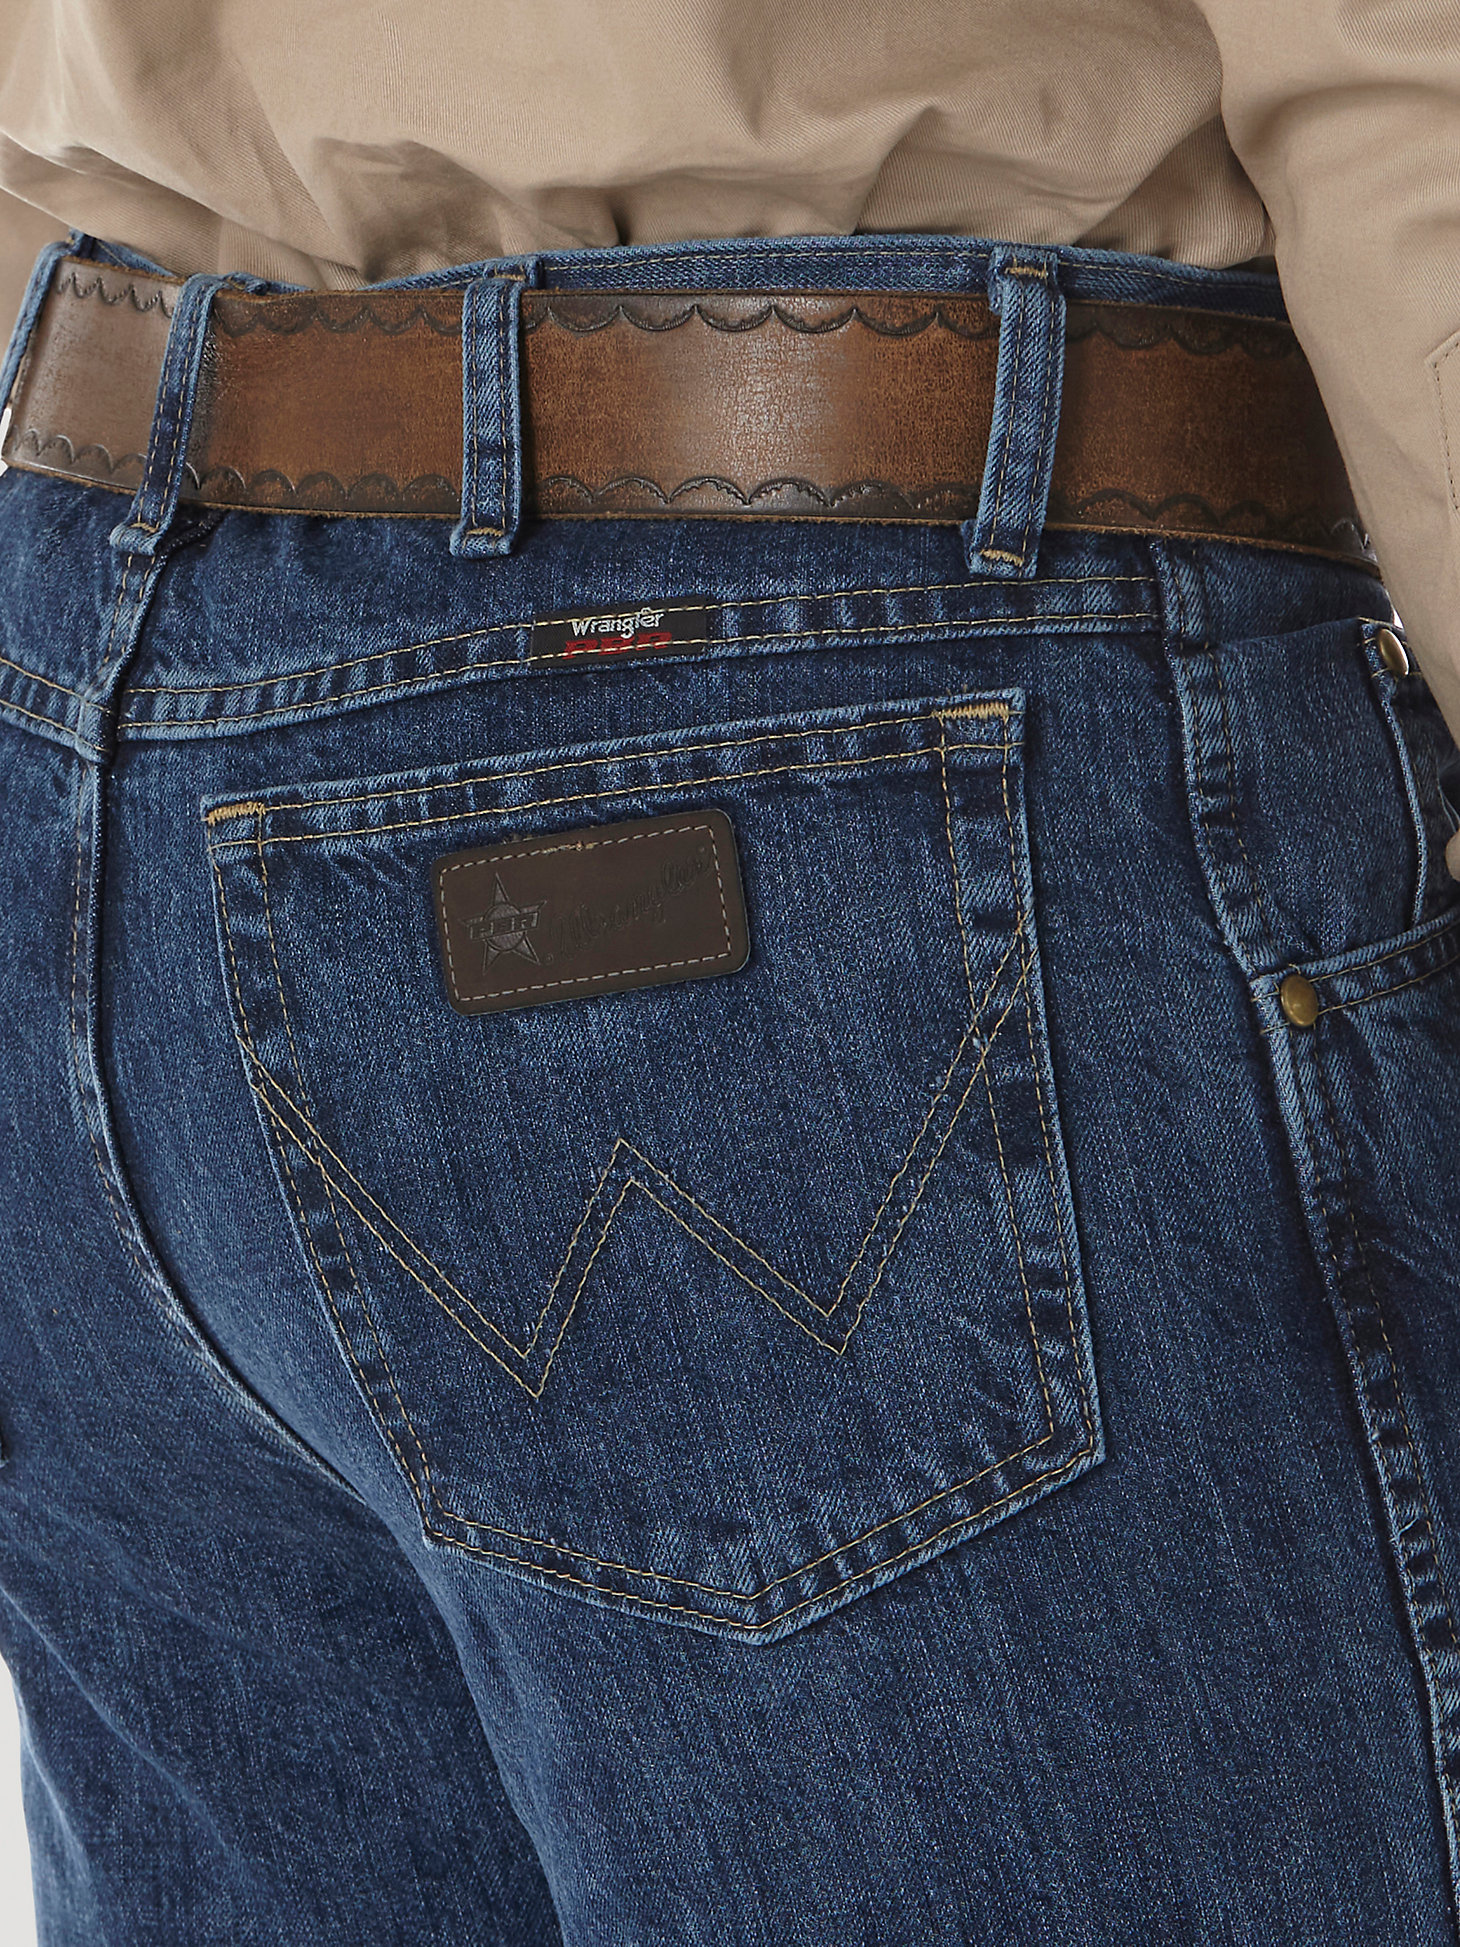 Men's Wrangler® PBR® Slim Fit Jean in Authentic Stone alternative view 3